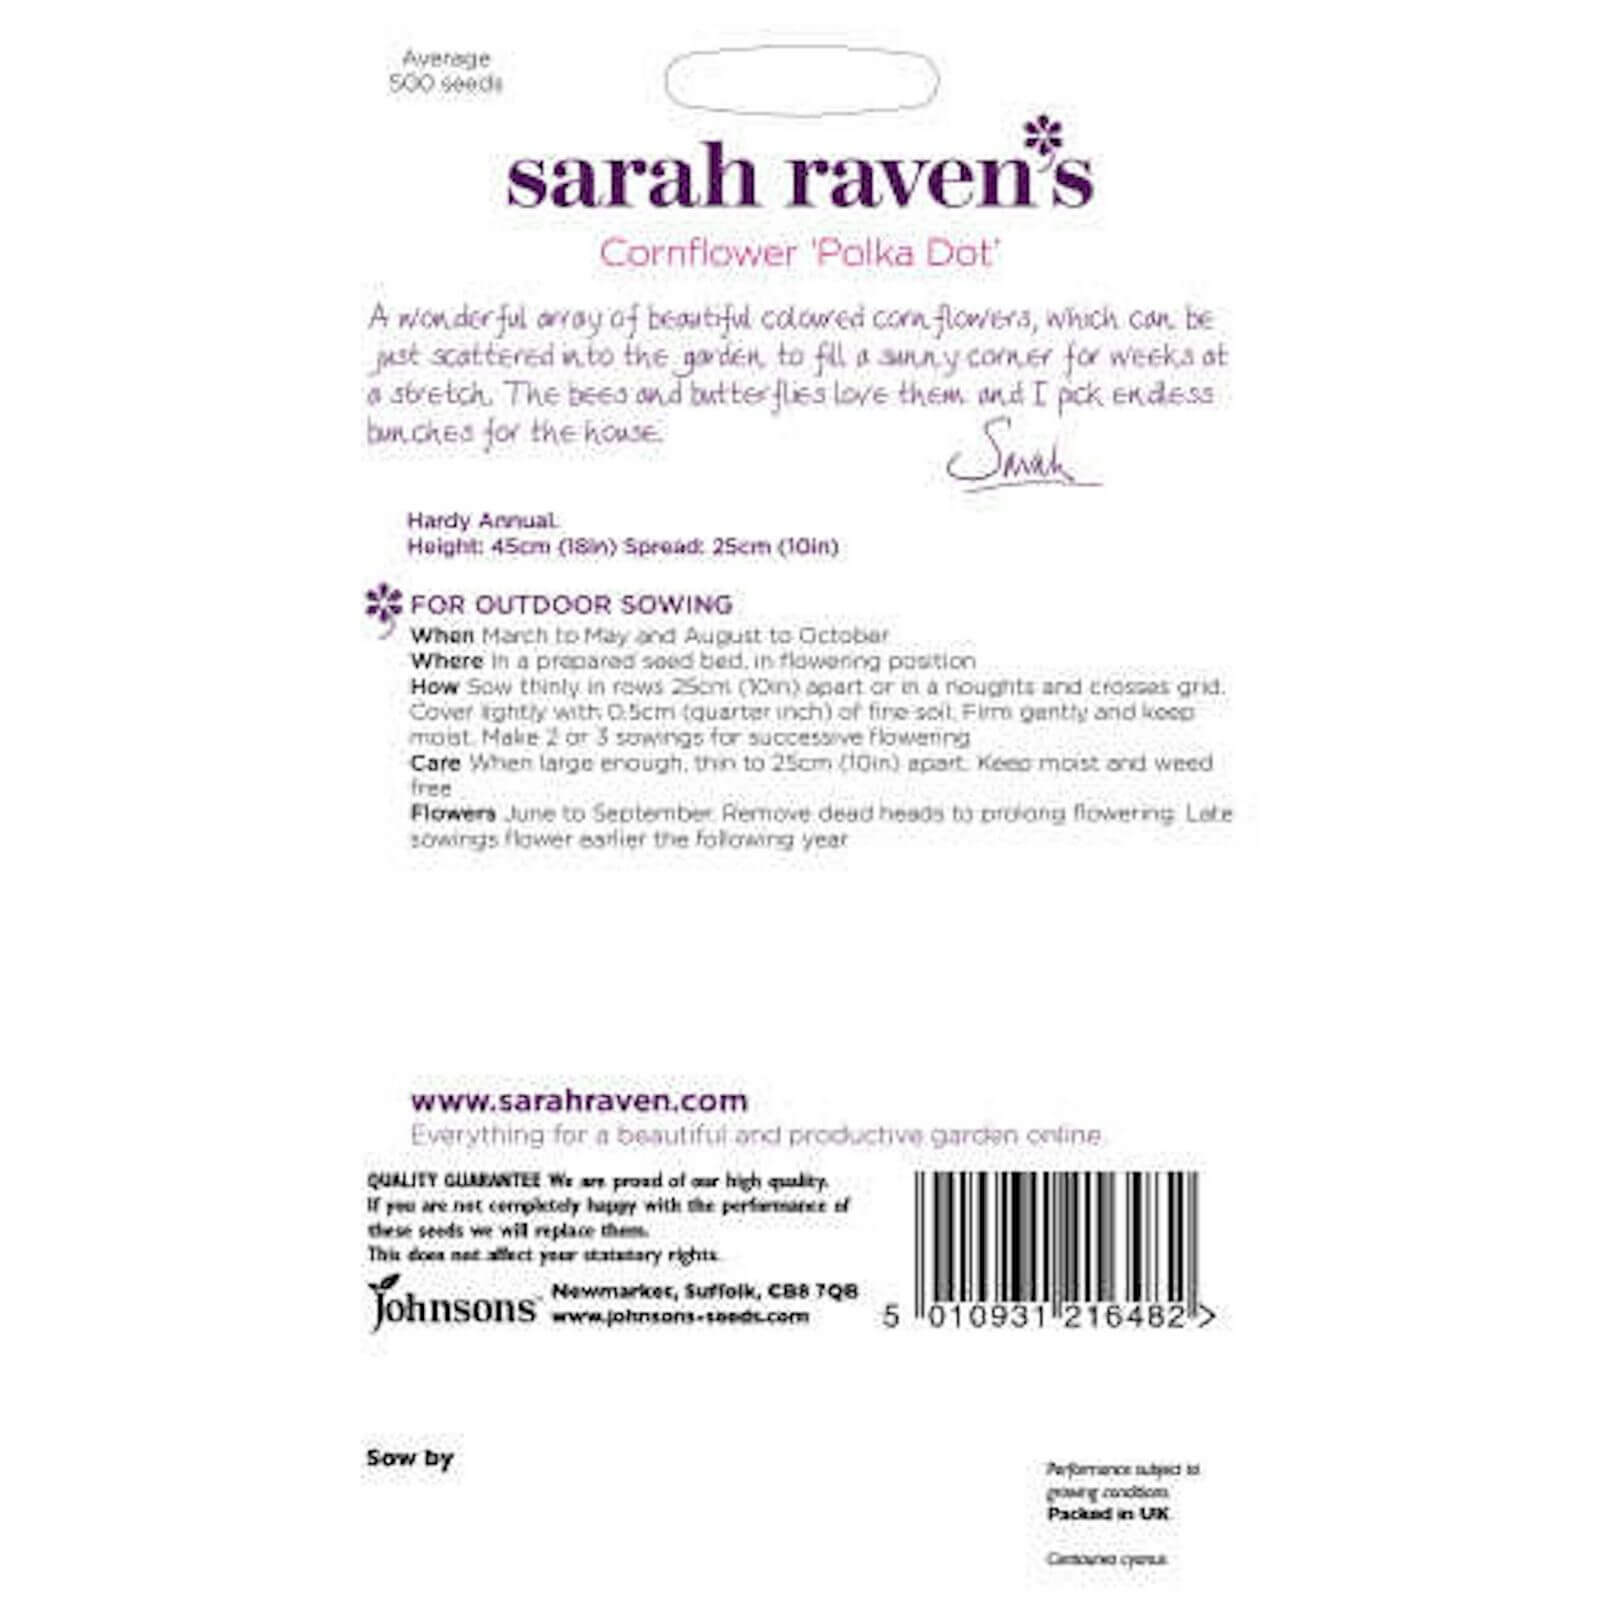 Sarah Ravens Cornflower Polka Dot Seeds